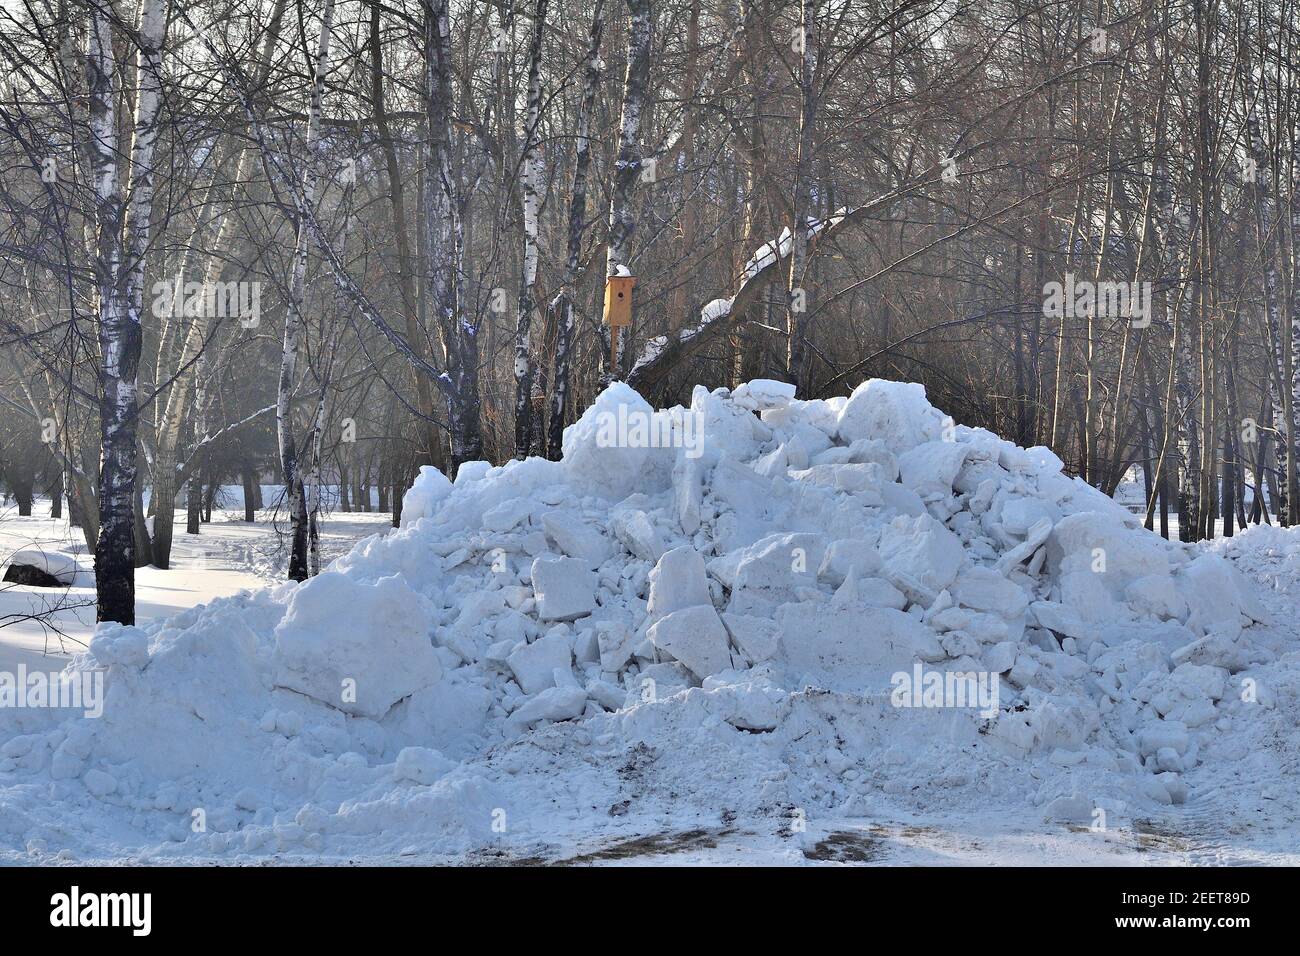 Snowdrift dans le parc de la ville. Les services municipaux communaux nettoient la neige sur les routes et les allées du parc de la ville. Forte dérive de neige après une chute de neige ou un blizzard Banque D'Images